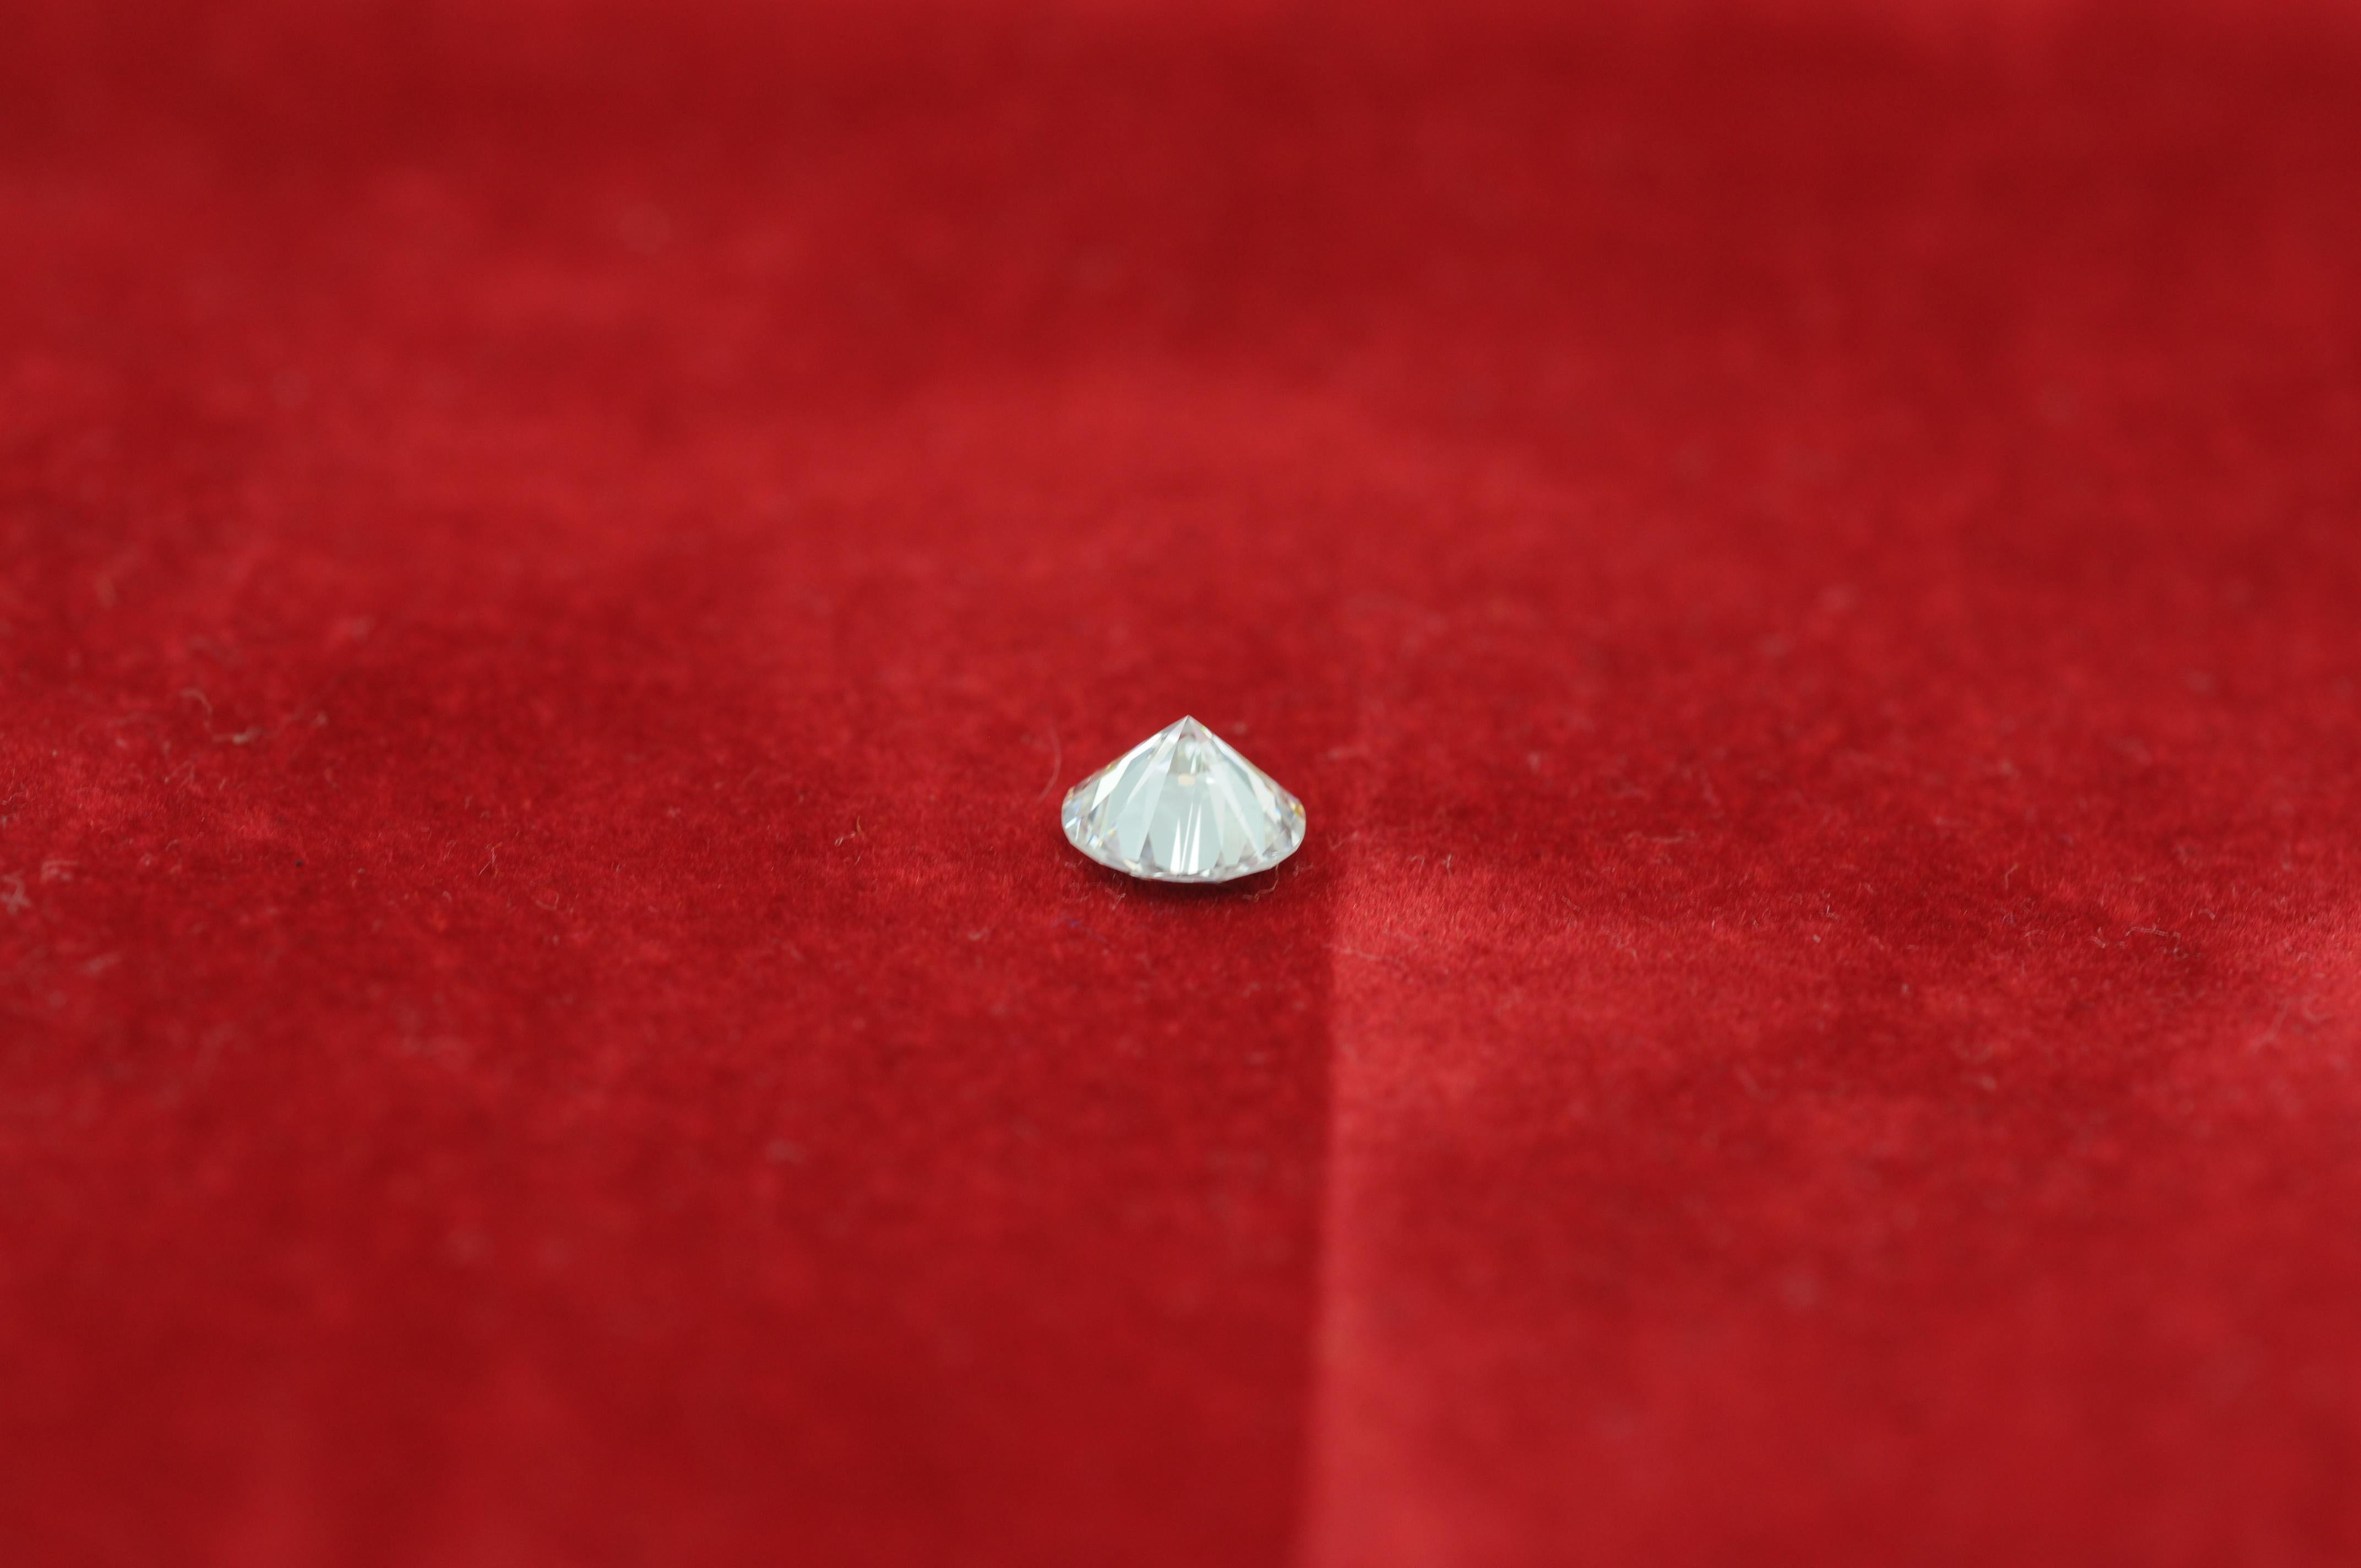  Claridad del diamante:(IF) internamente impecable color: top wesselton 1.06ct en venta 9